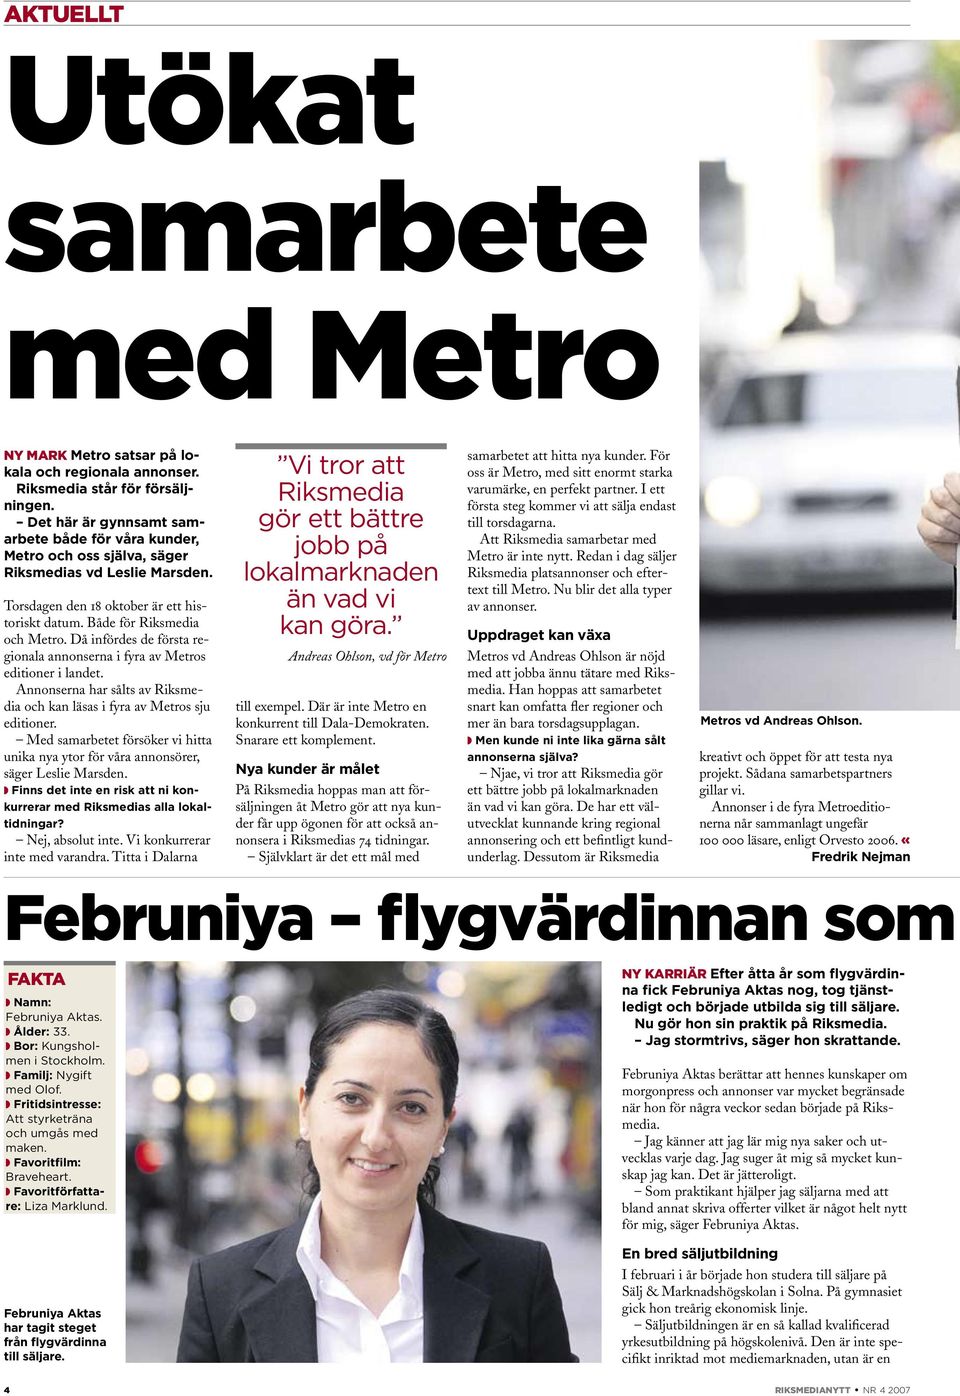 Då infördes de första regionala annonserna i fyra av Metros editioner i landet. Annonserna har sålts av Riksmedia och kan läsas i fyra av Metros sju editioner.